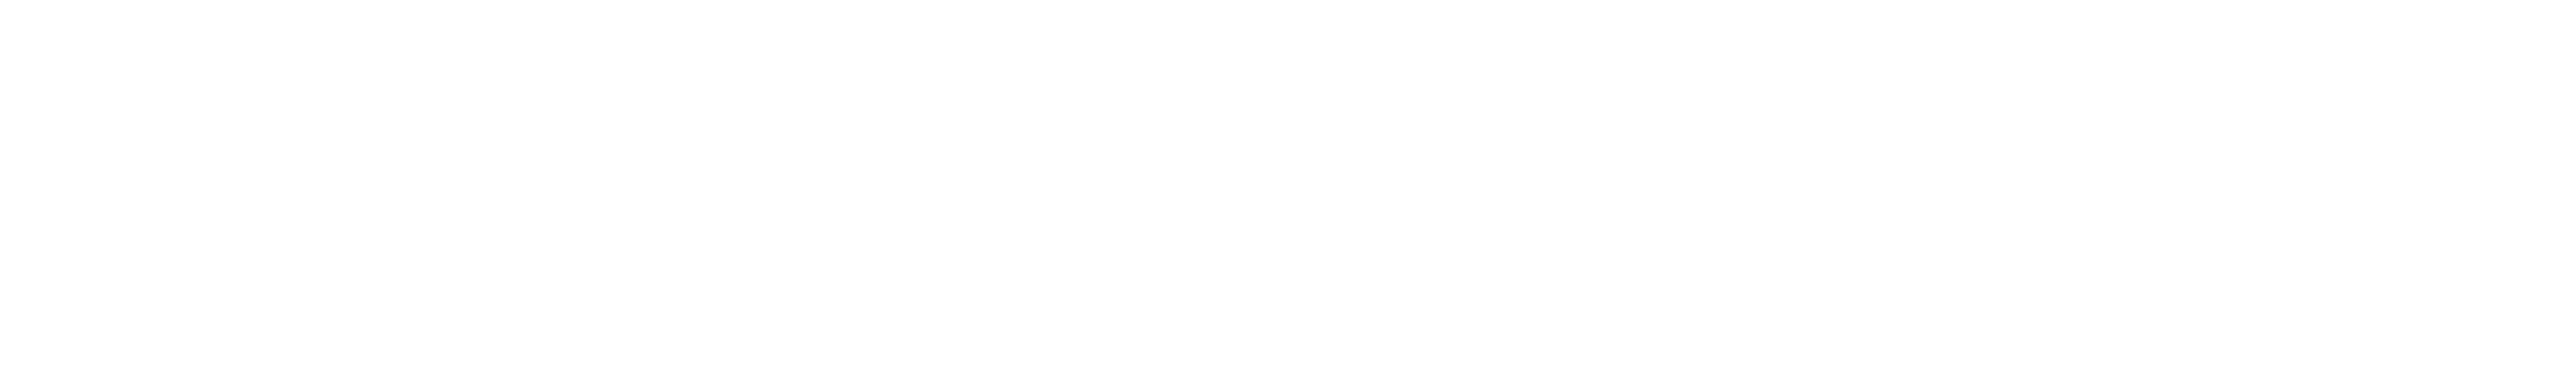 1 Sendcloud-logo- white.png